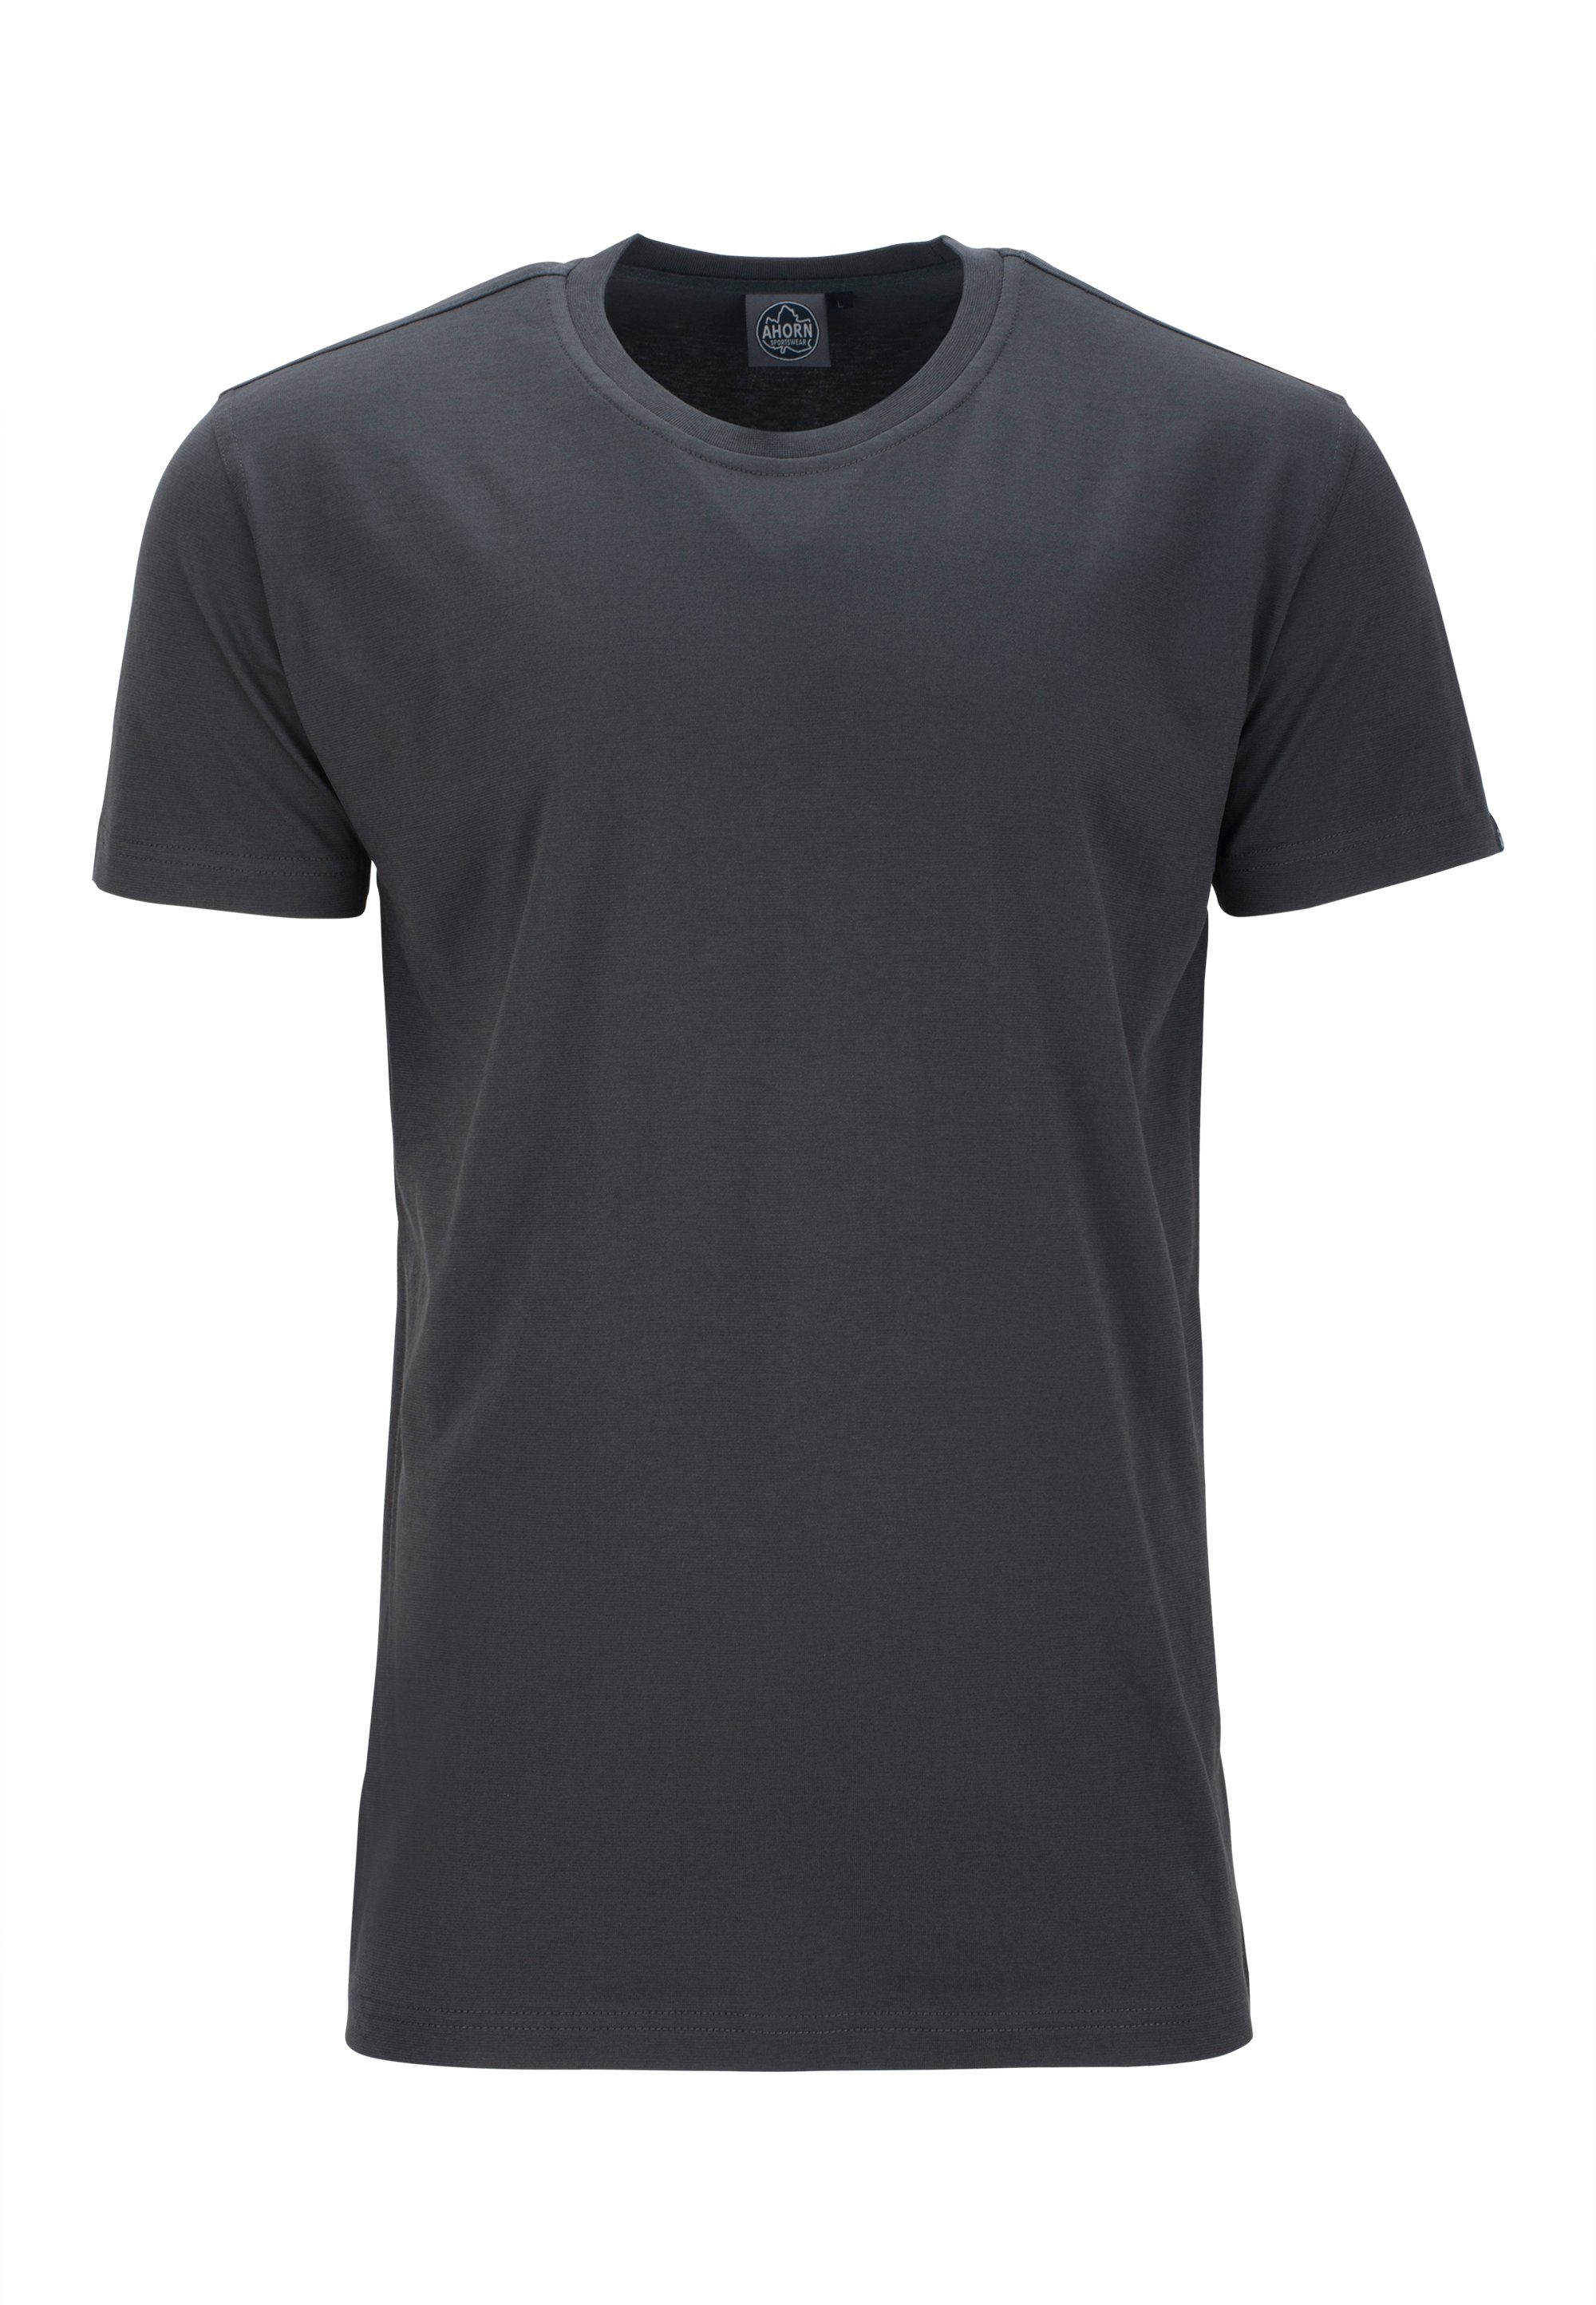 AHORN SPORTSWEAR T-Shirt im klassischen Basic-Look grau